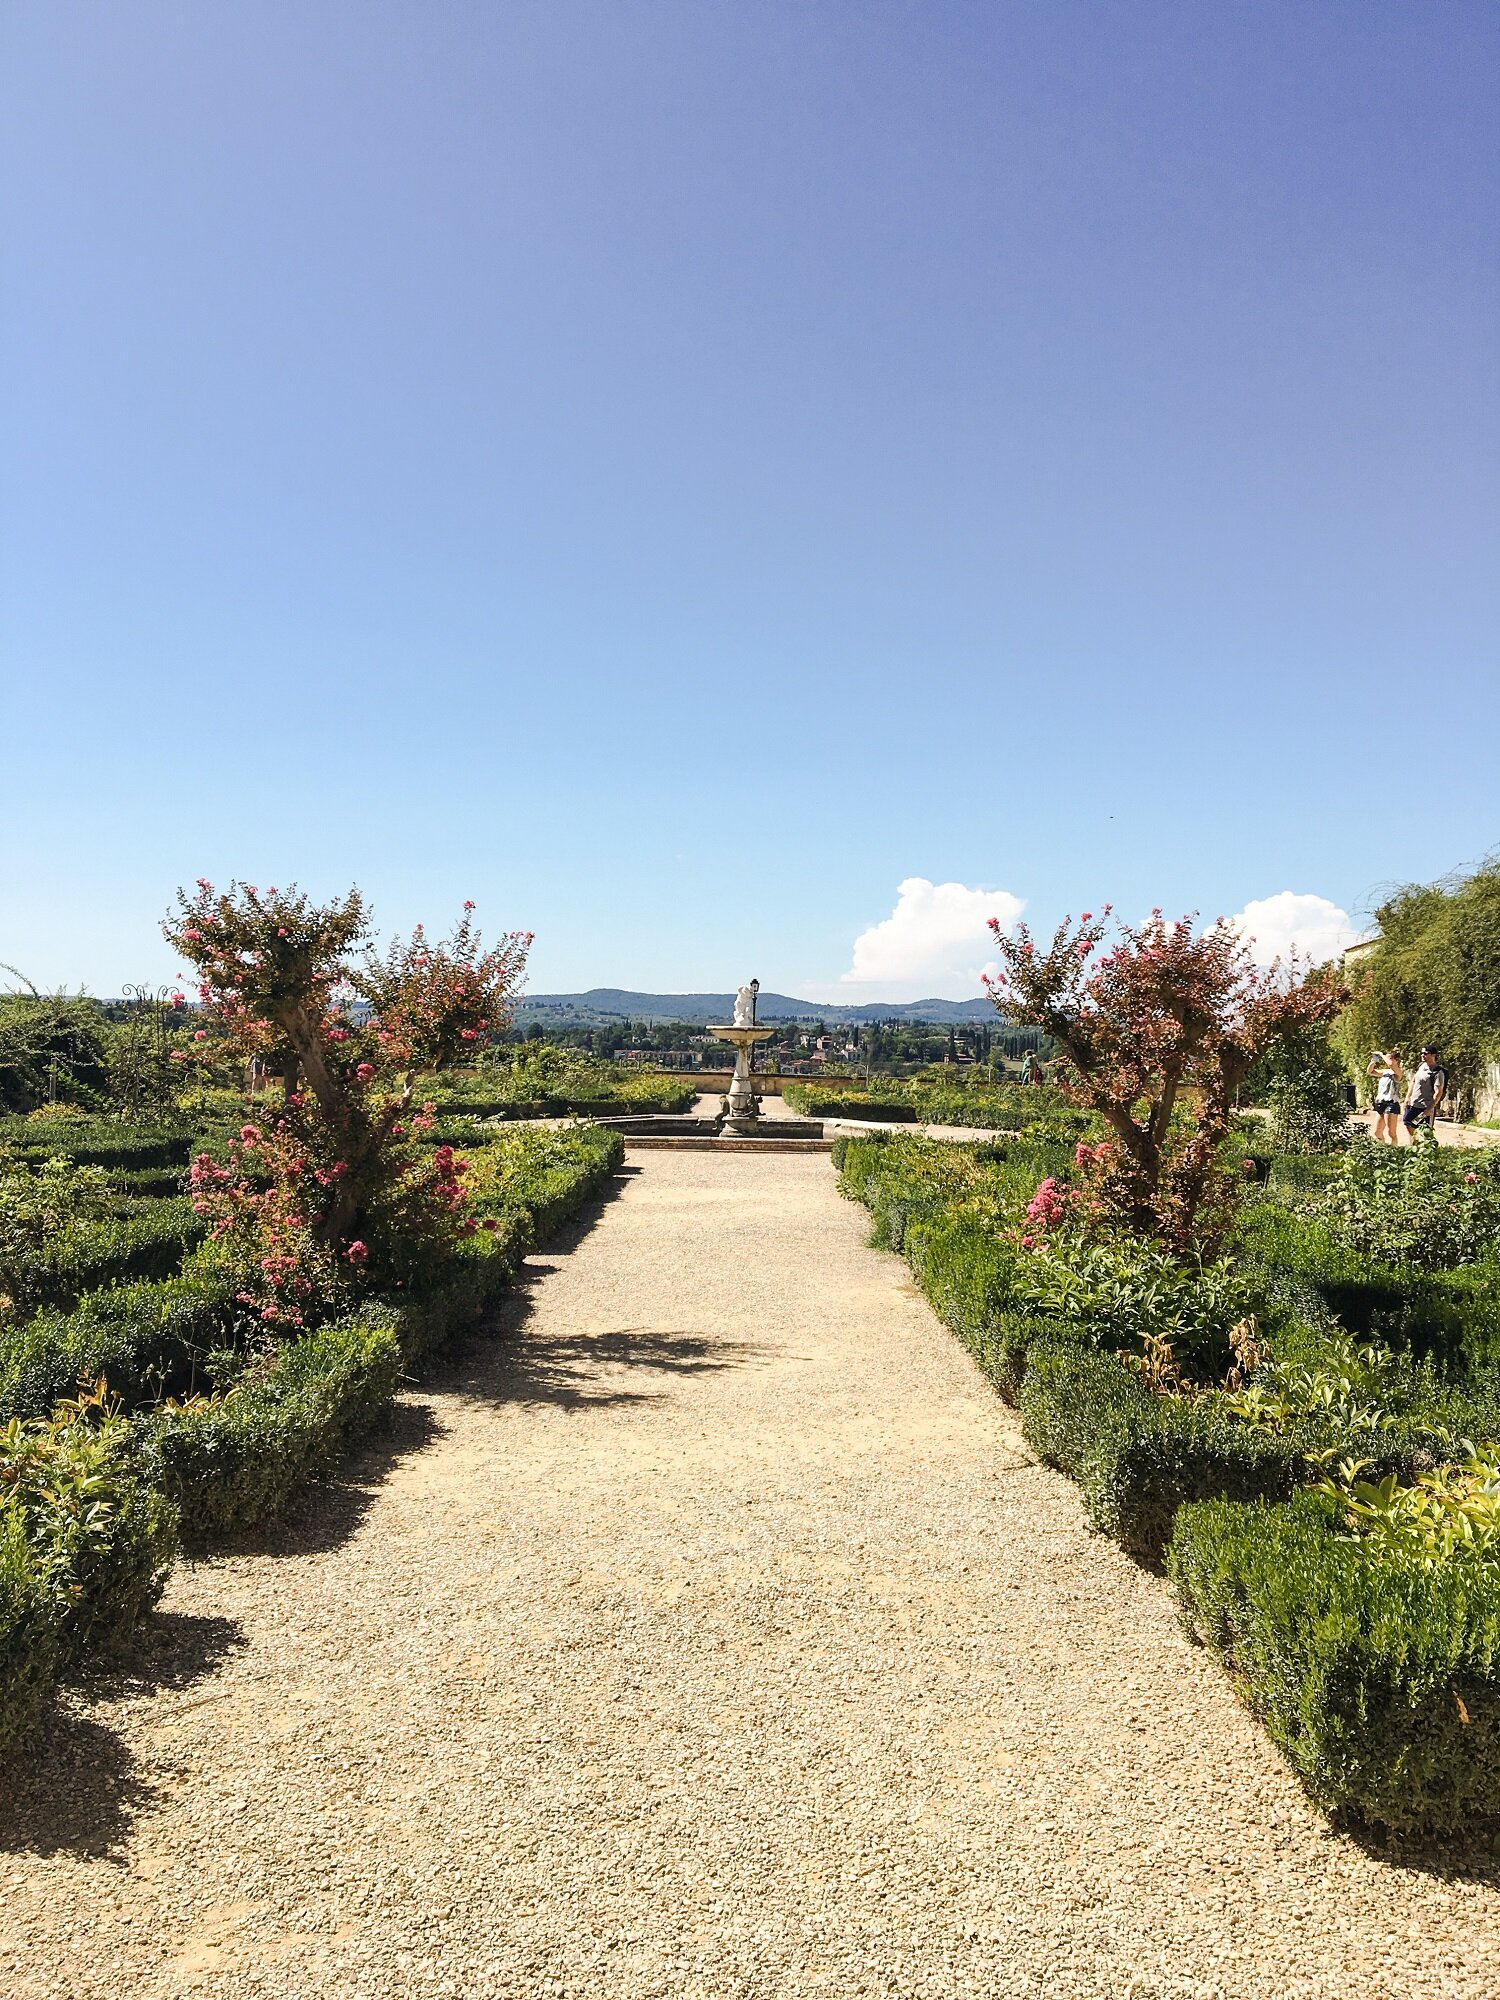  Boboli Gardens, Florence, Italy | Blooming Magnolias Blog | Travel, Europe, Tuscany 